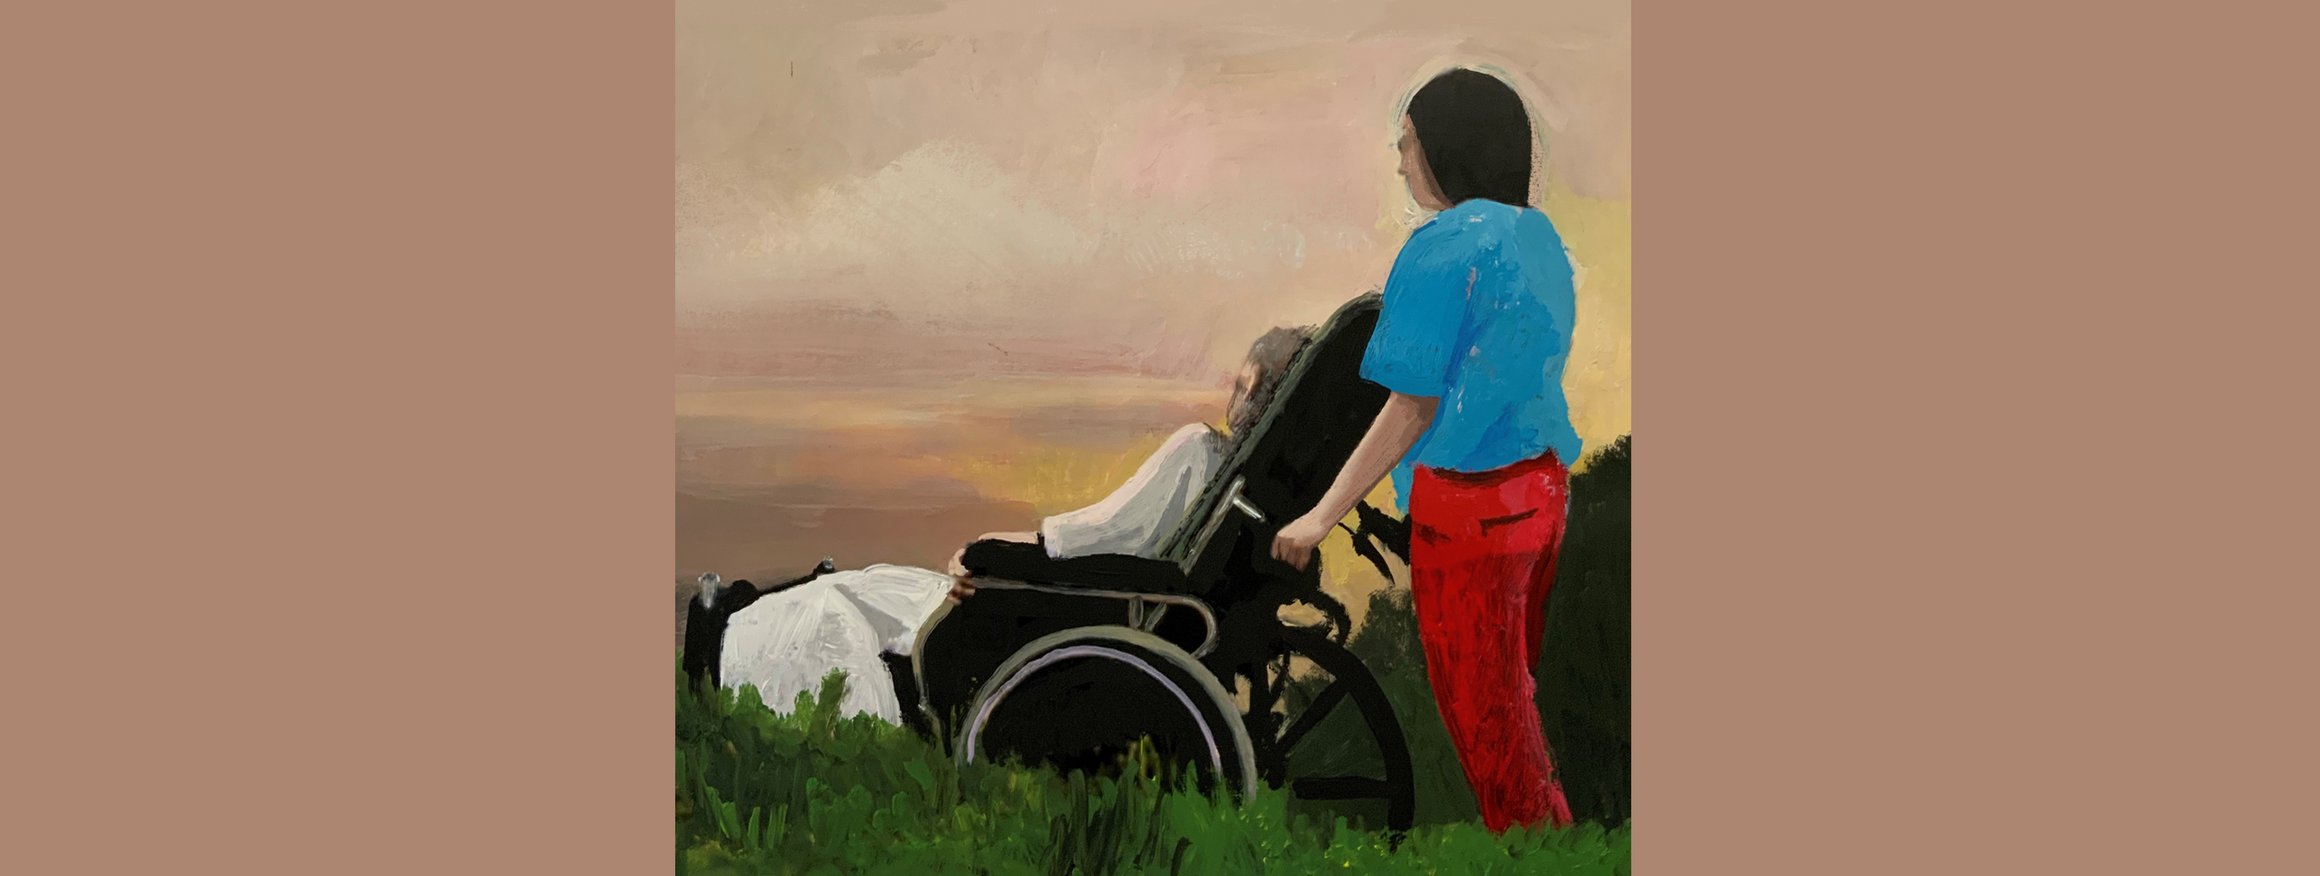 Die Illustration zeigt eine Frau, die eine Person im Rollstuhl schiebt und dabei den Sonnenuntergang betrachten